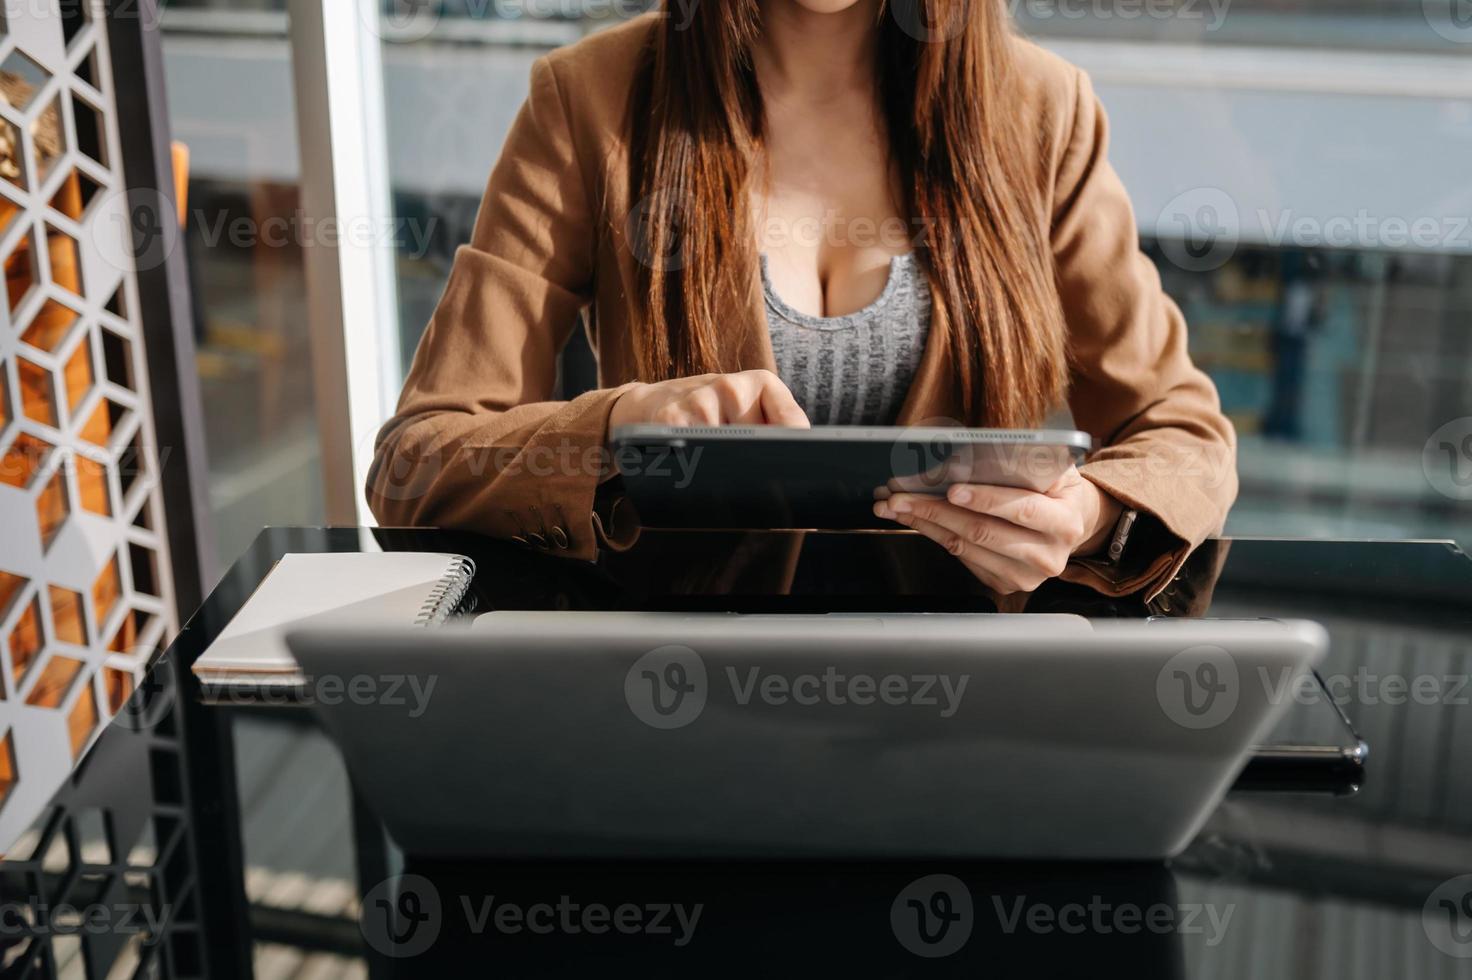 zakenman die werkt met digitale tabletcomputer en smartphone met laageffect van financiële bedrijfsstrategie op bureau in ochtendlicht foto